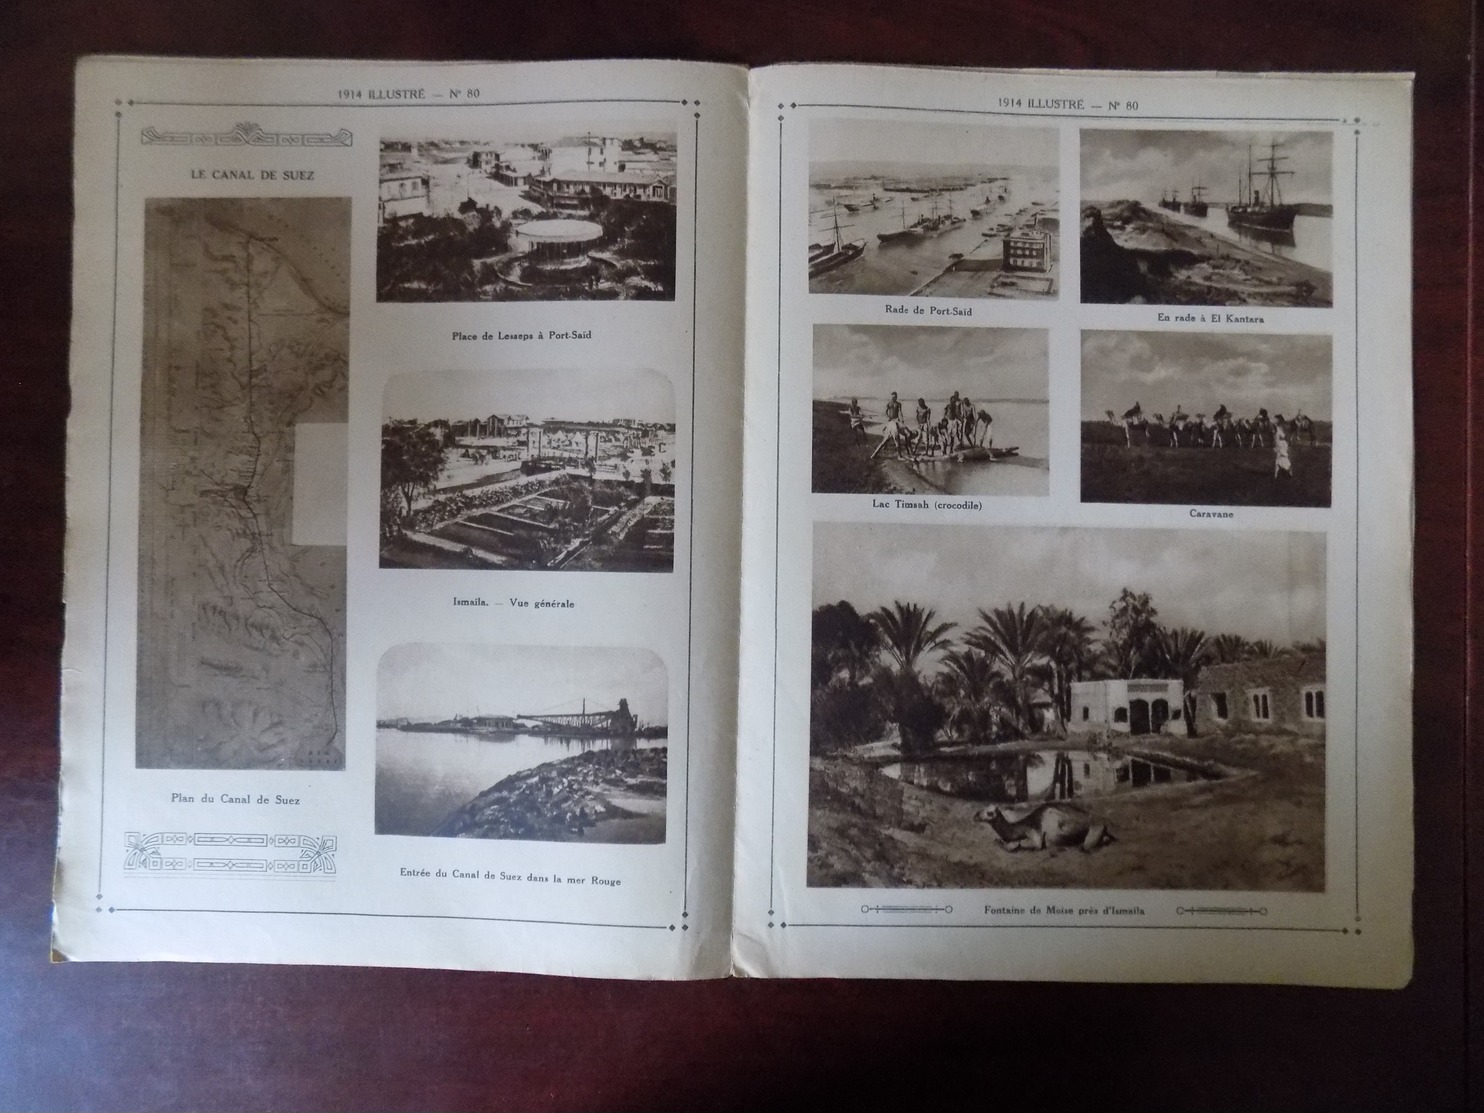 1914 Illustré N° 80 Dunkerque - Canal De Suez - Ismaila - Chine - Bruxelles " Oeuvre De L'épluchure Pommes De Terre " - War 1914-18